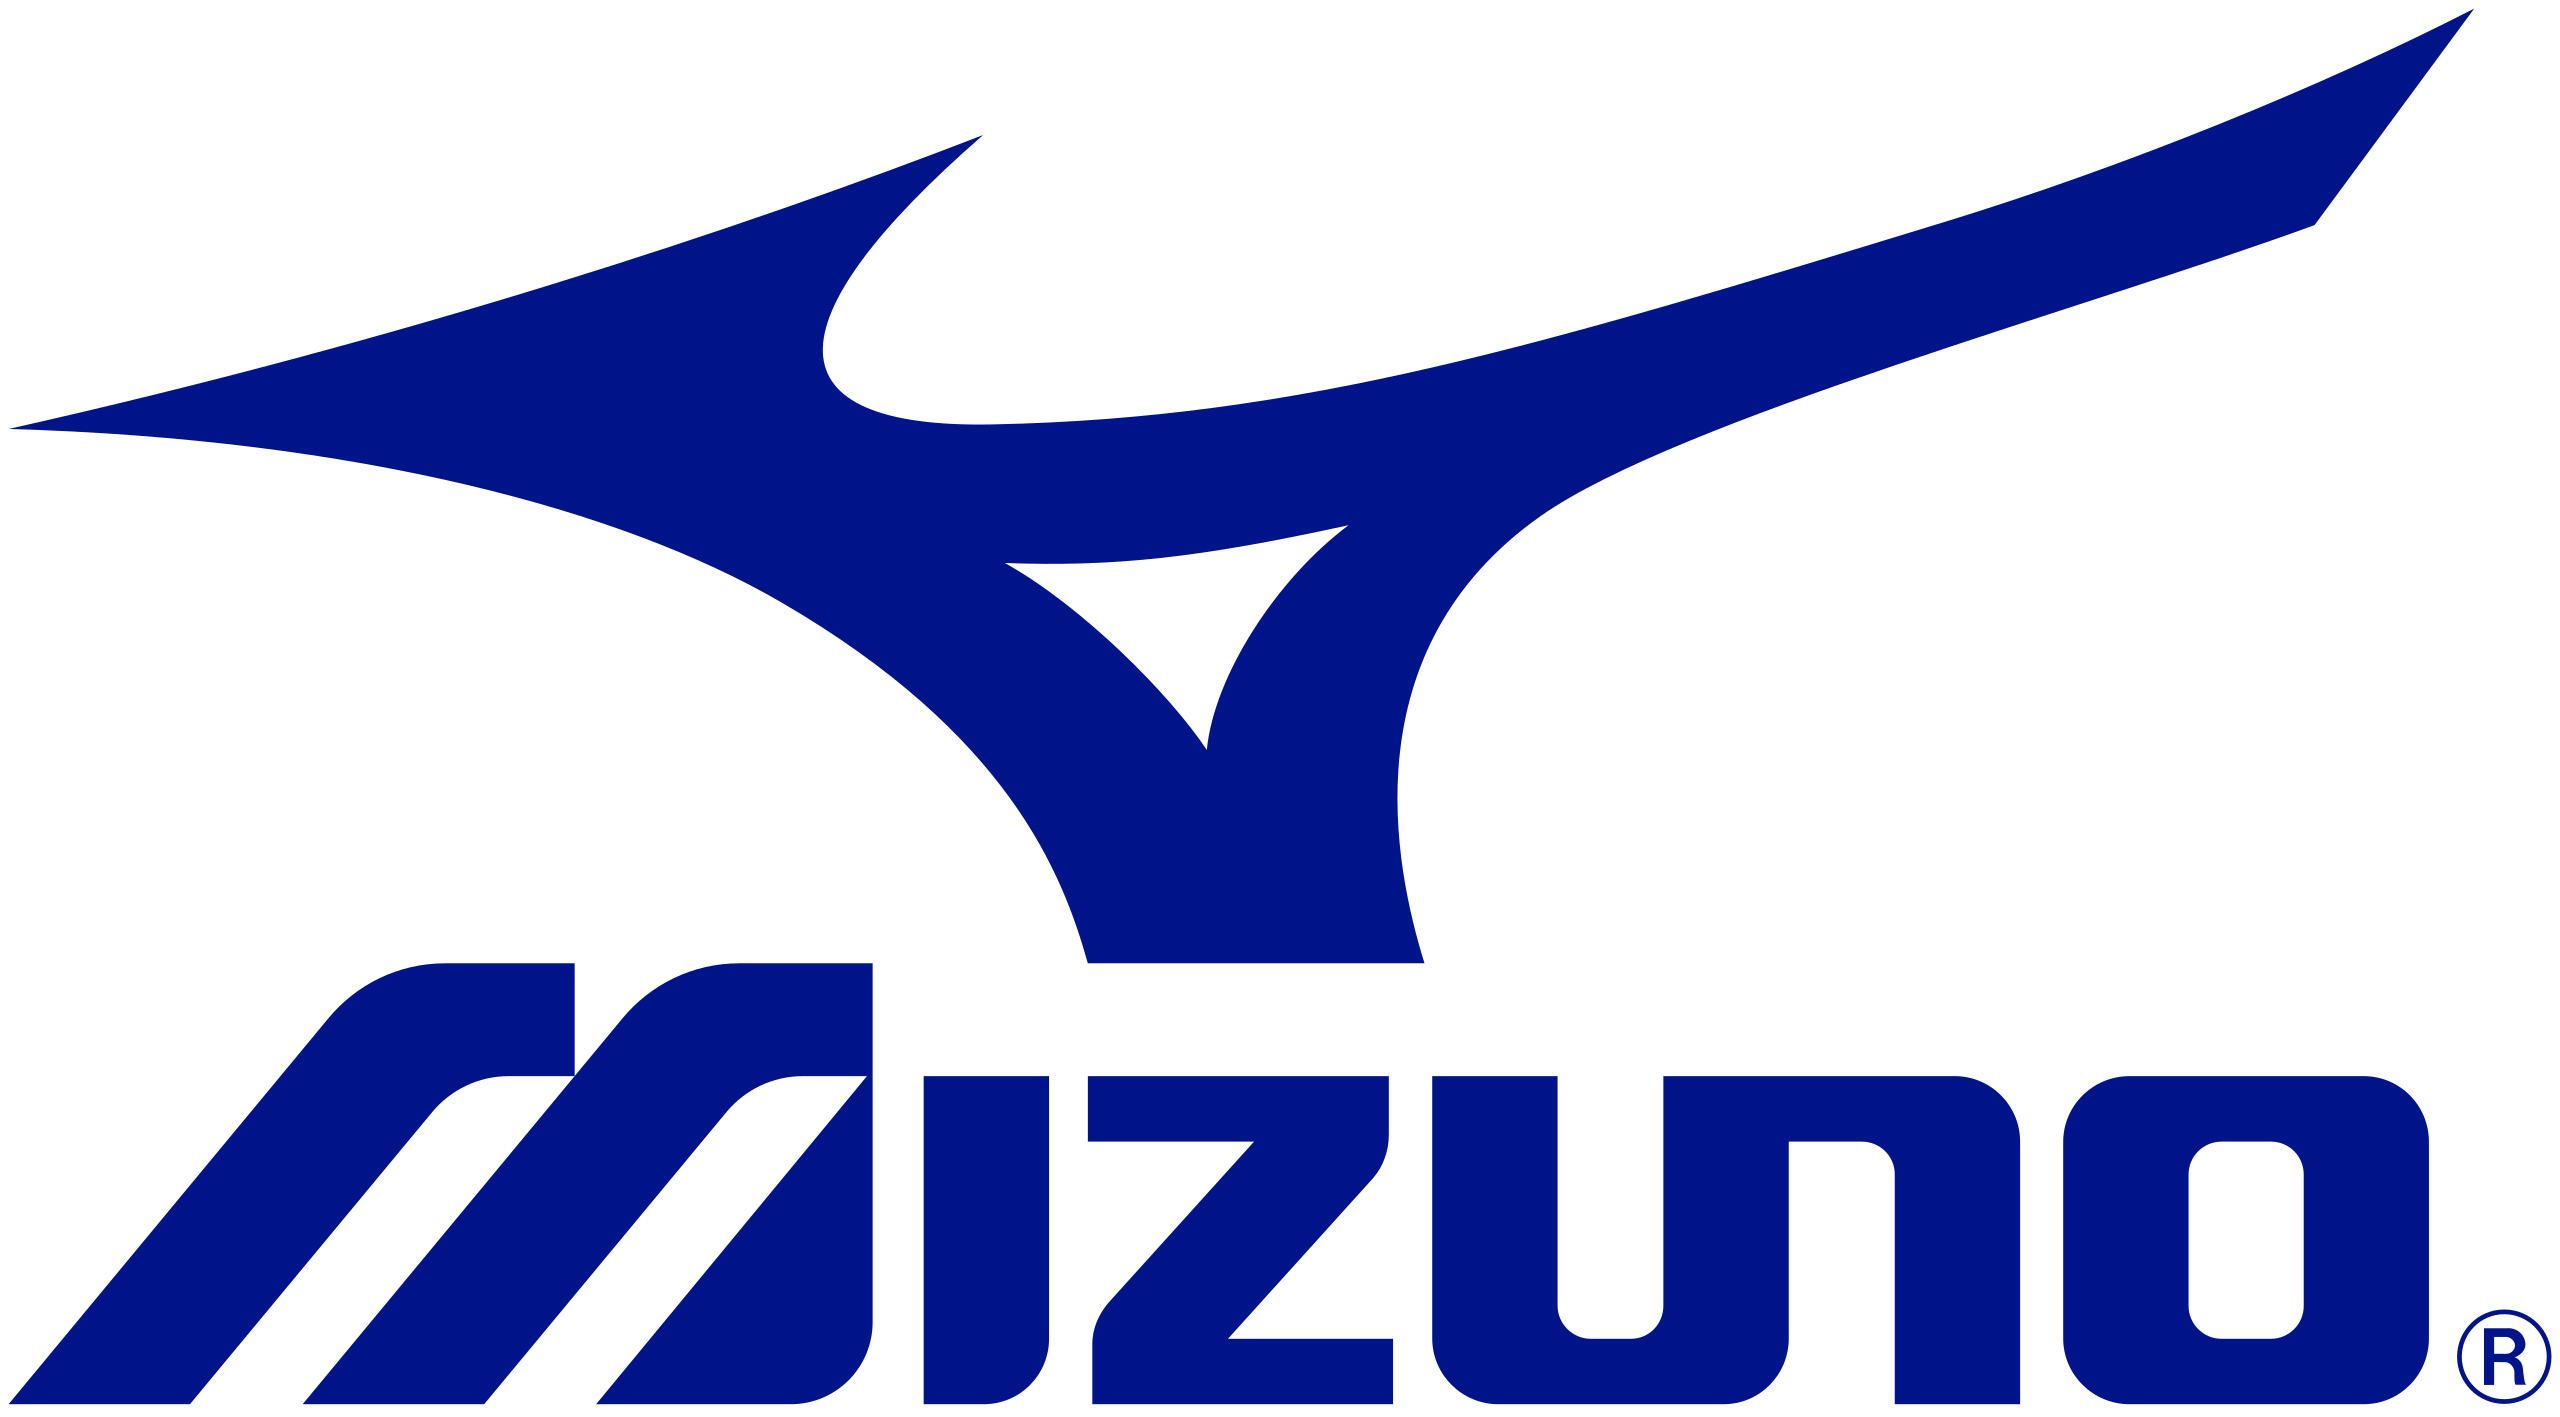 The Mizuno logo.